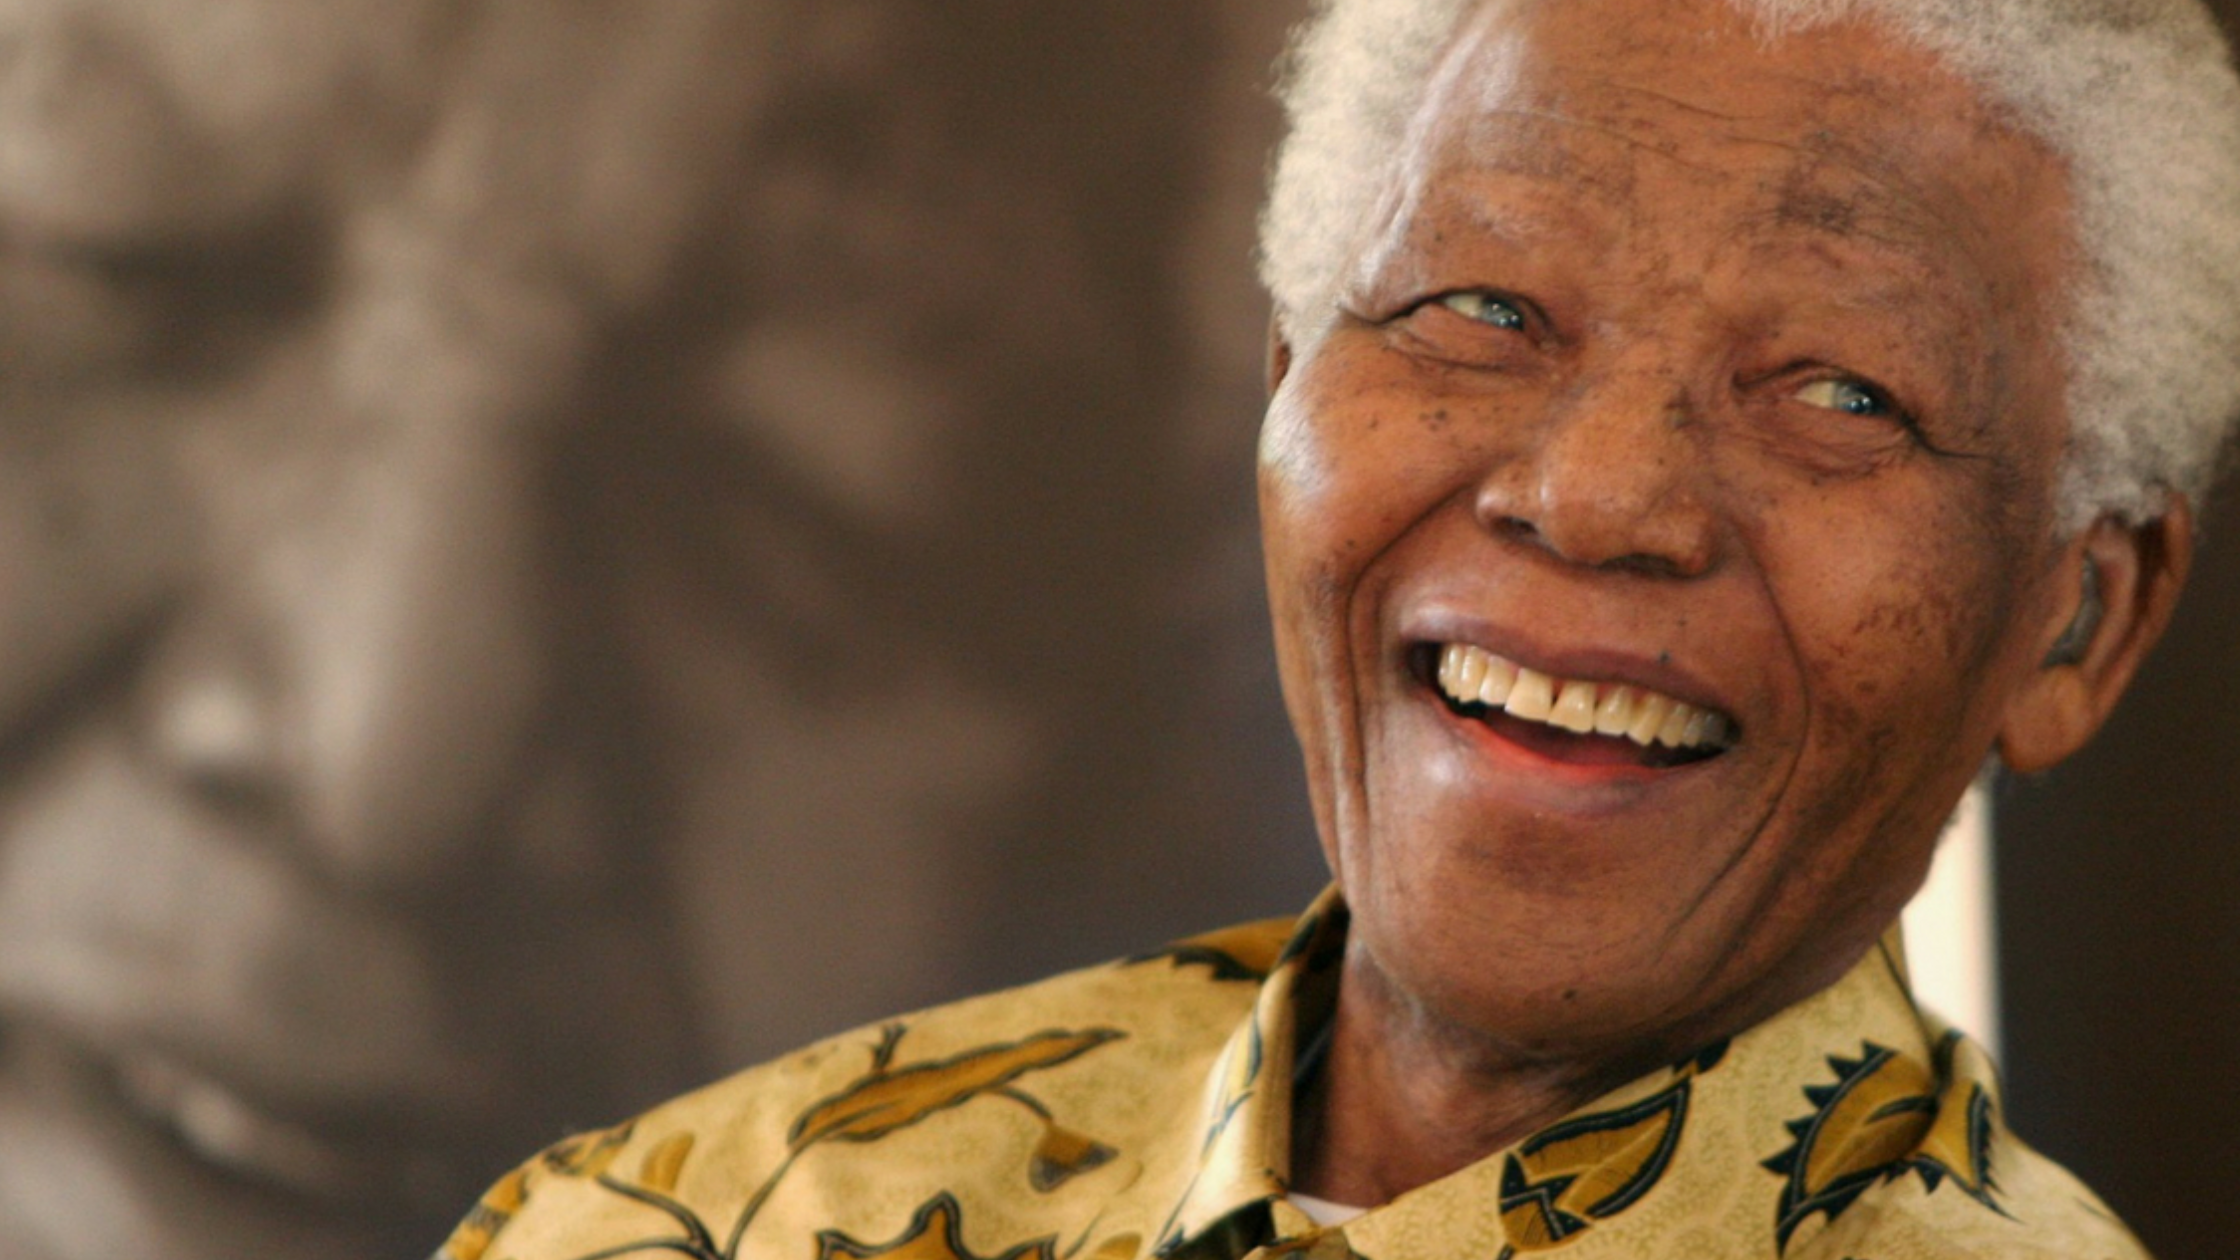 Oratória de Nelson Mandela: A poder das pausas na comunicação Saiba como Nelson Mandela utilizava frequentemente as pausas para criar uma conexão emocional com sua audiência.